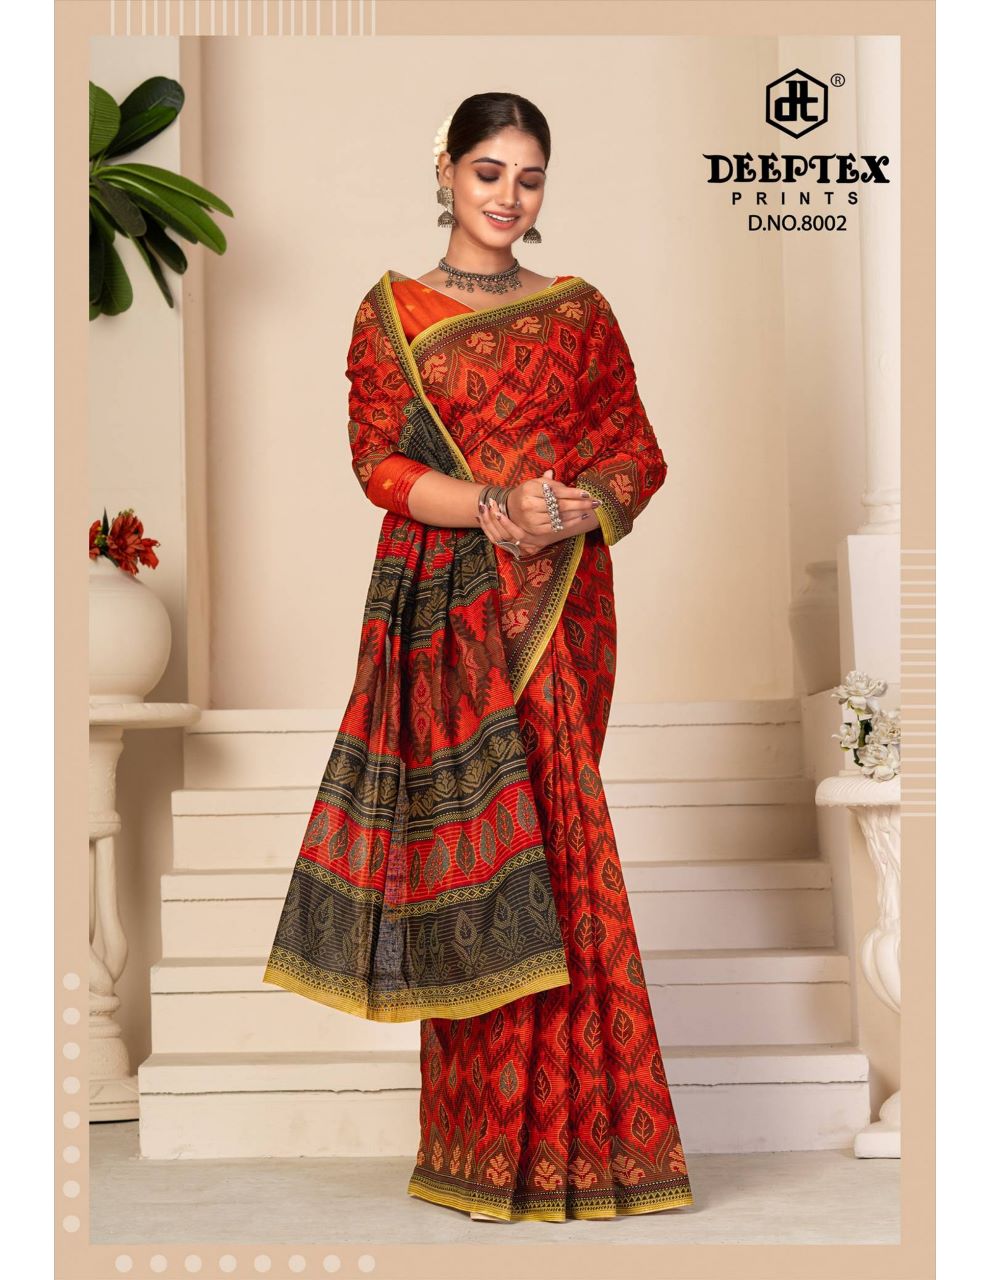 Bengal Cotton Saree - Designer Sarees Rs 500 to 1000 - SareesWala.com